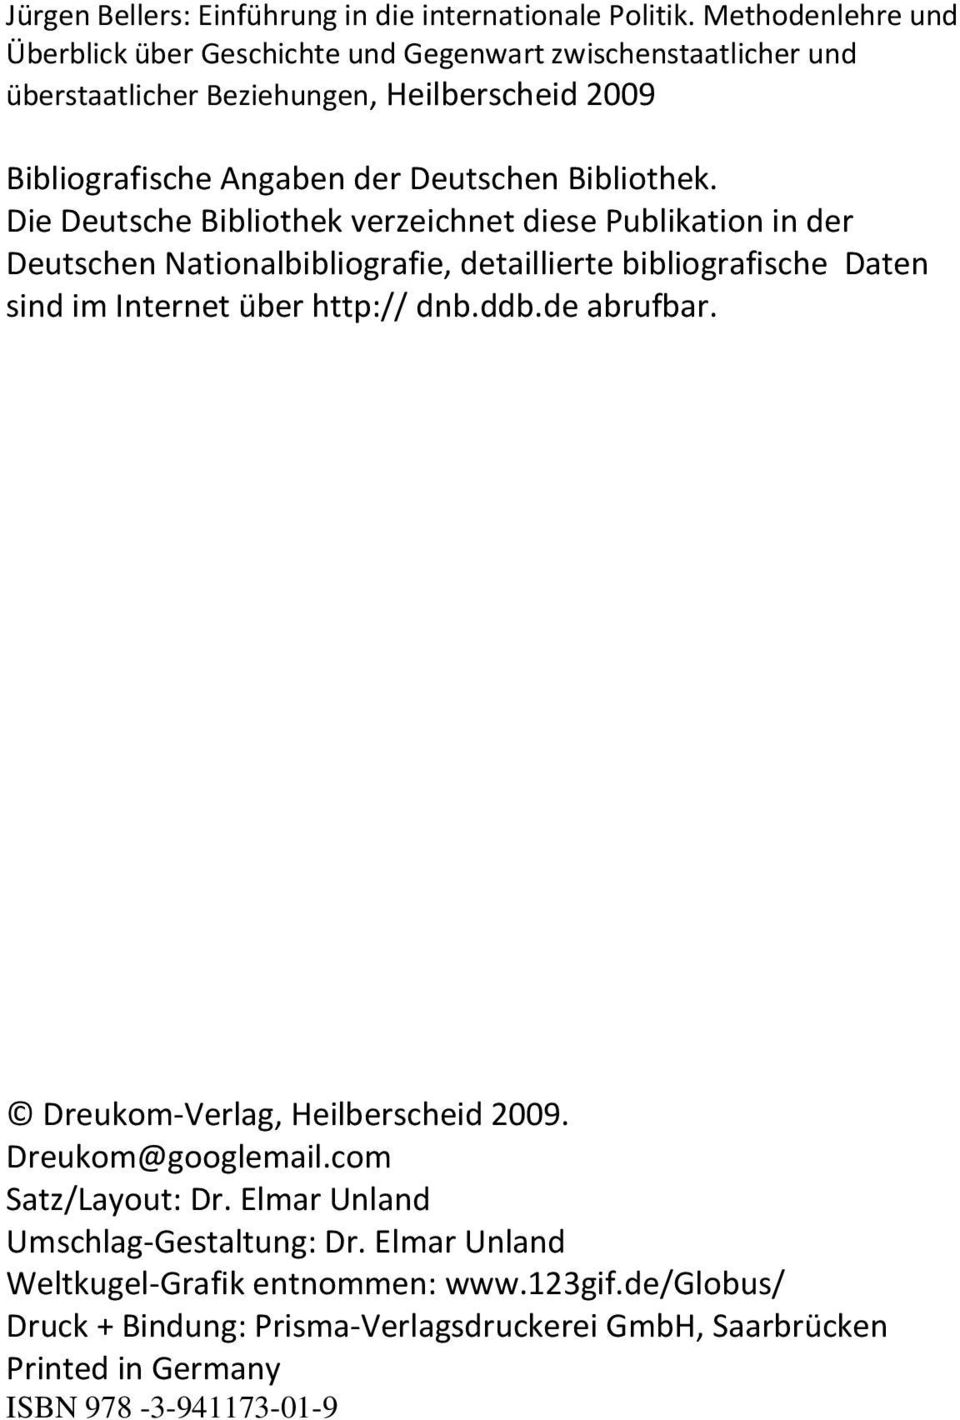 Bibliothek. Die Deutsche Bibliothek verzeichnet diese Publikation in der Deutschen Nationalbibliografie, detaillierte bibliografische Daten sind im Internet über http:// dnb.